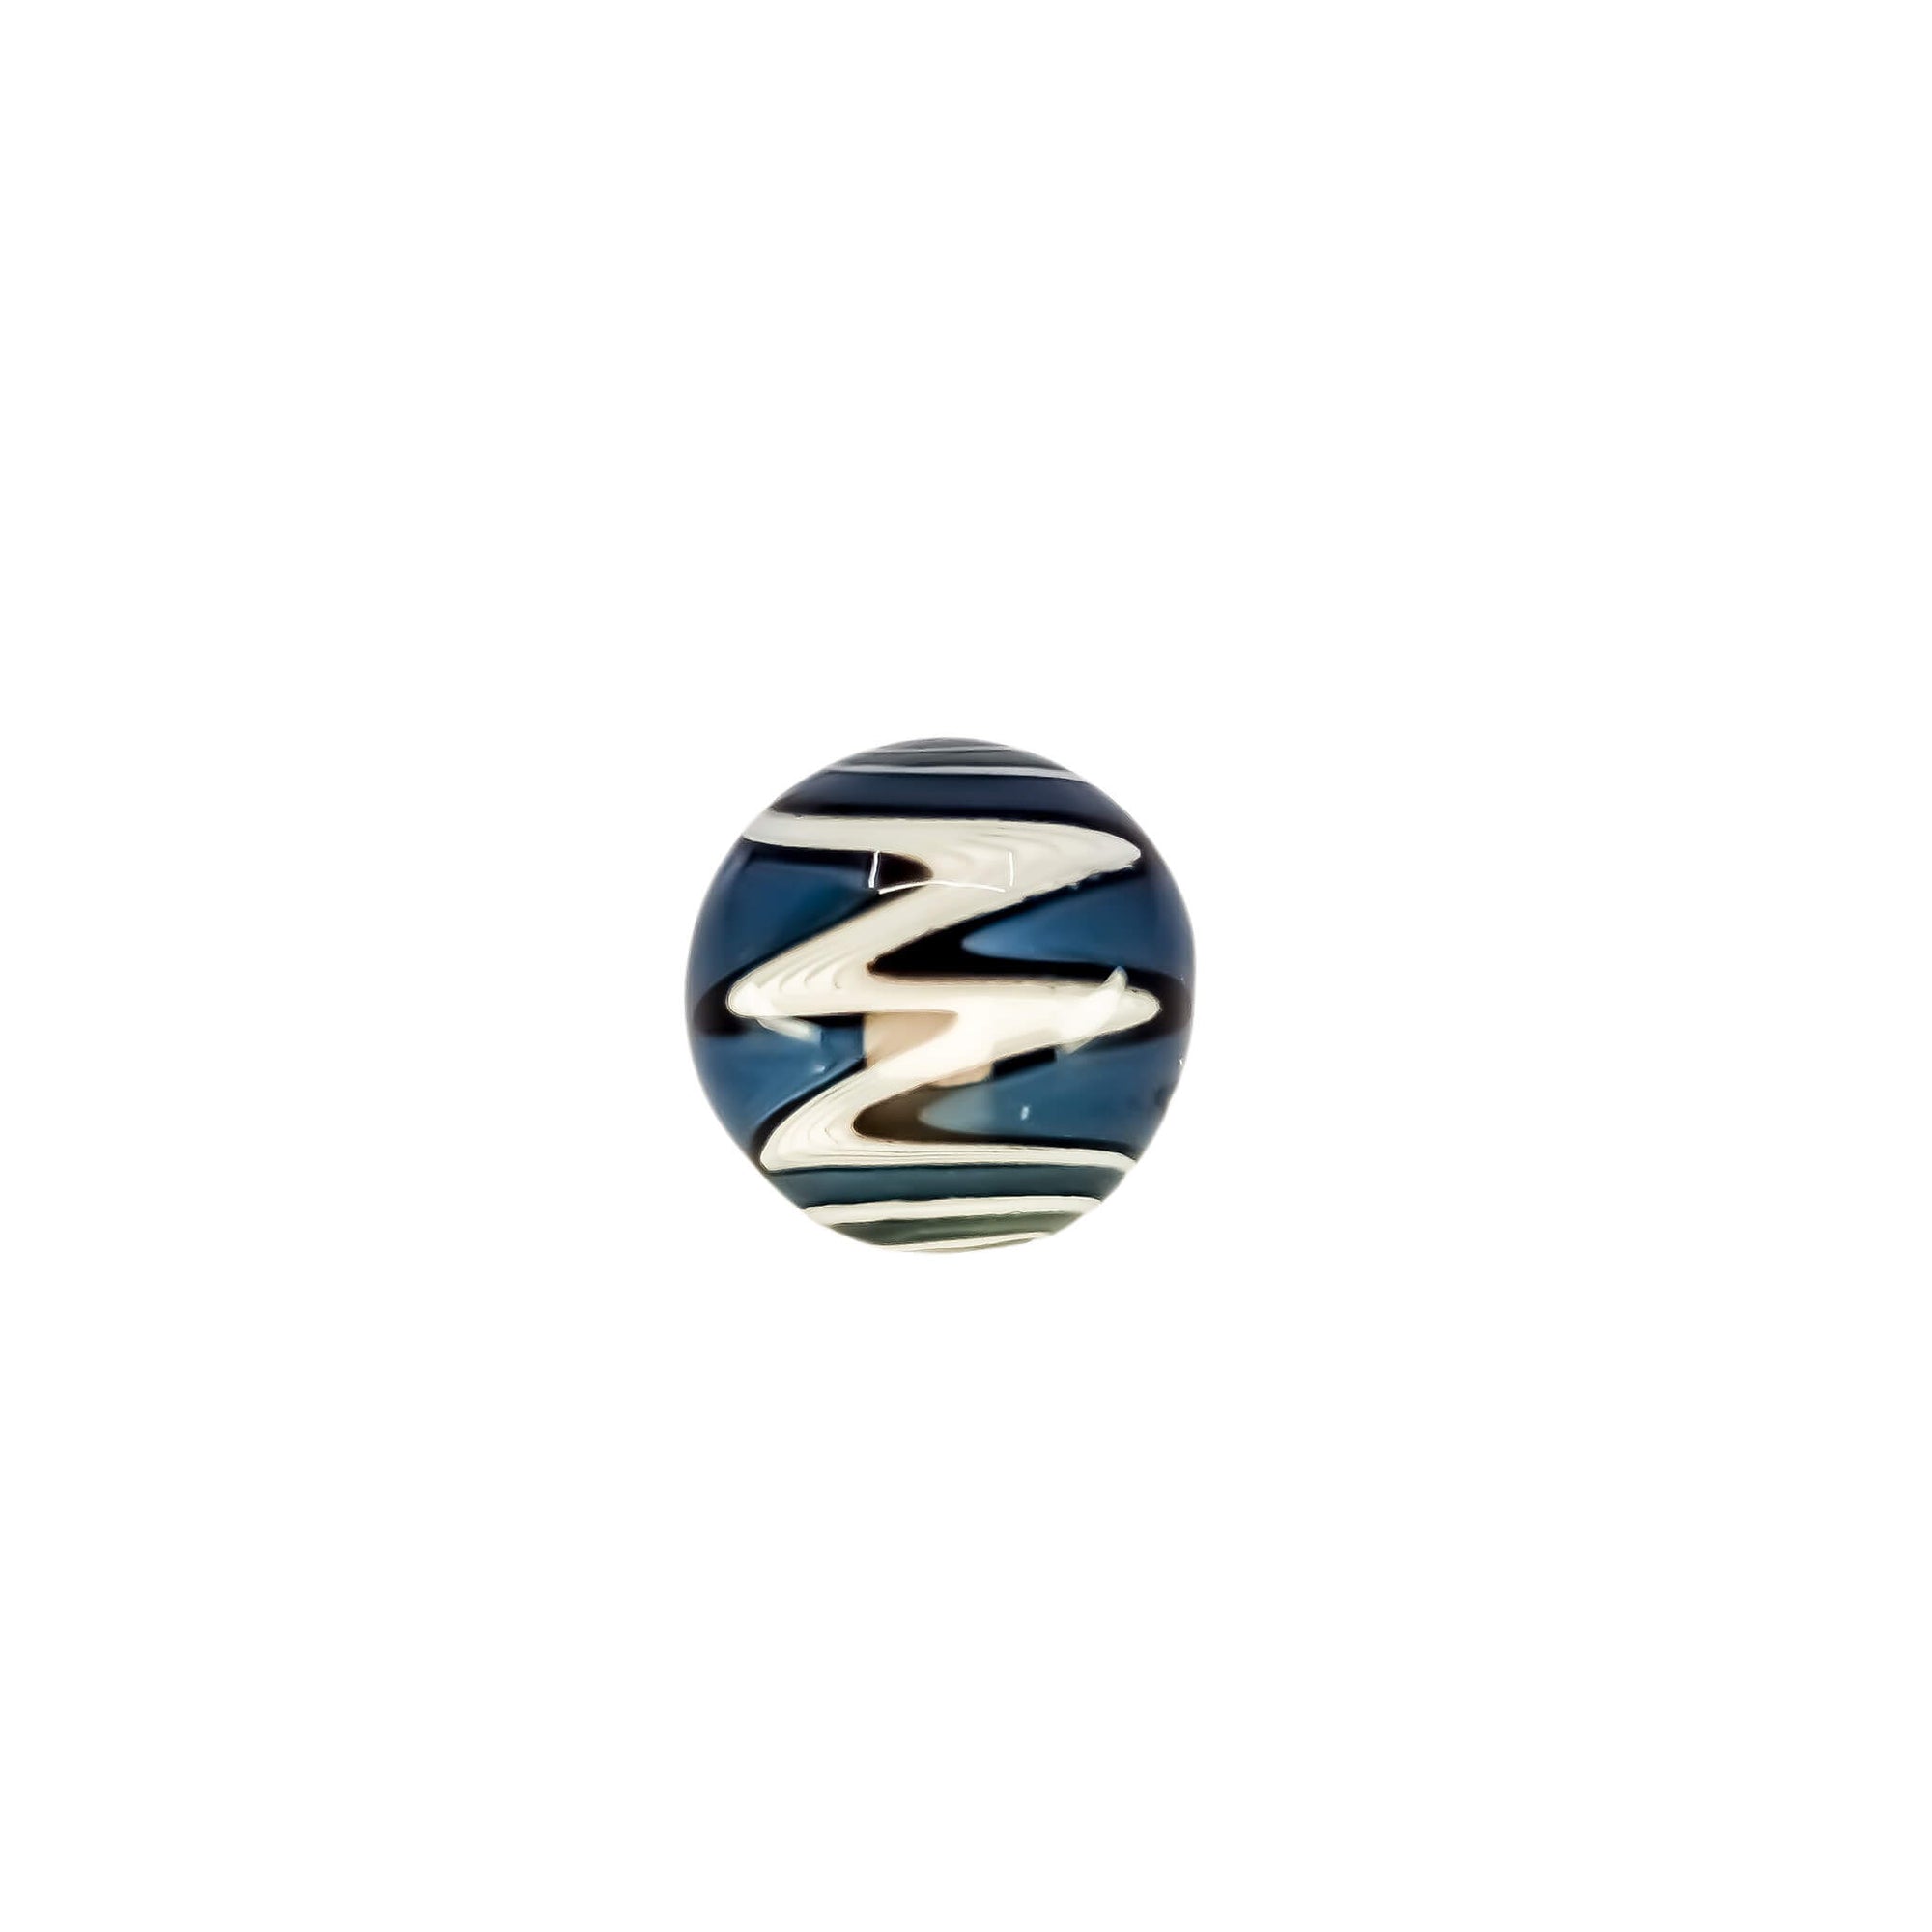 Wig Wag Terp Slurper Marble | Blue/Black/White Colorway View On Slurper | TDS